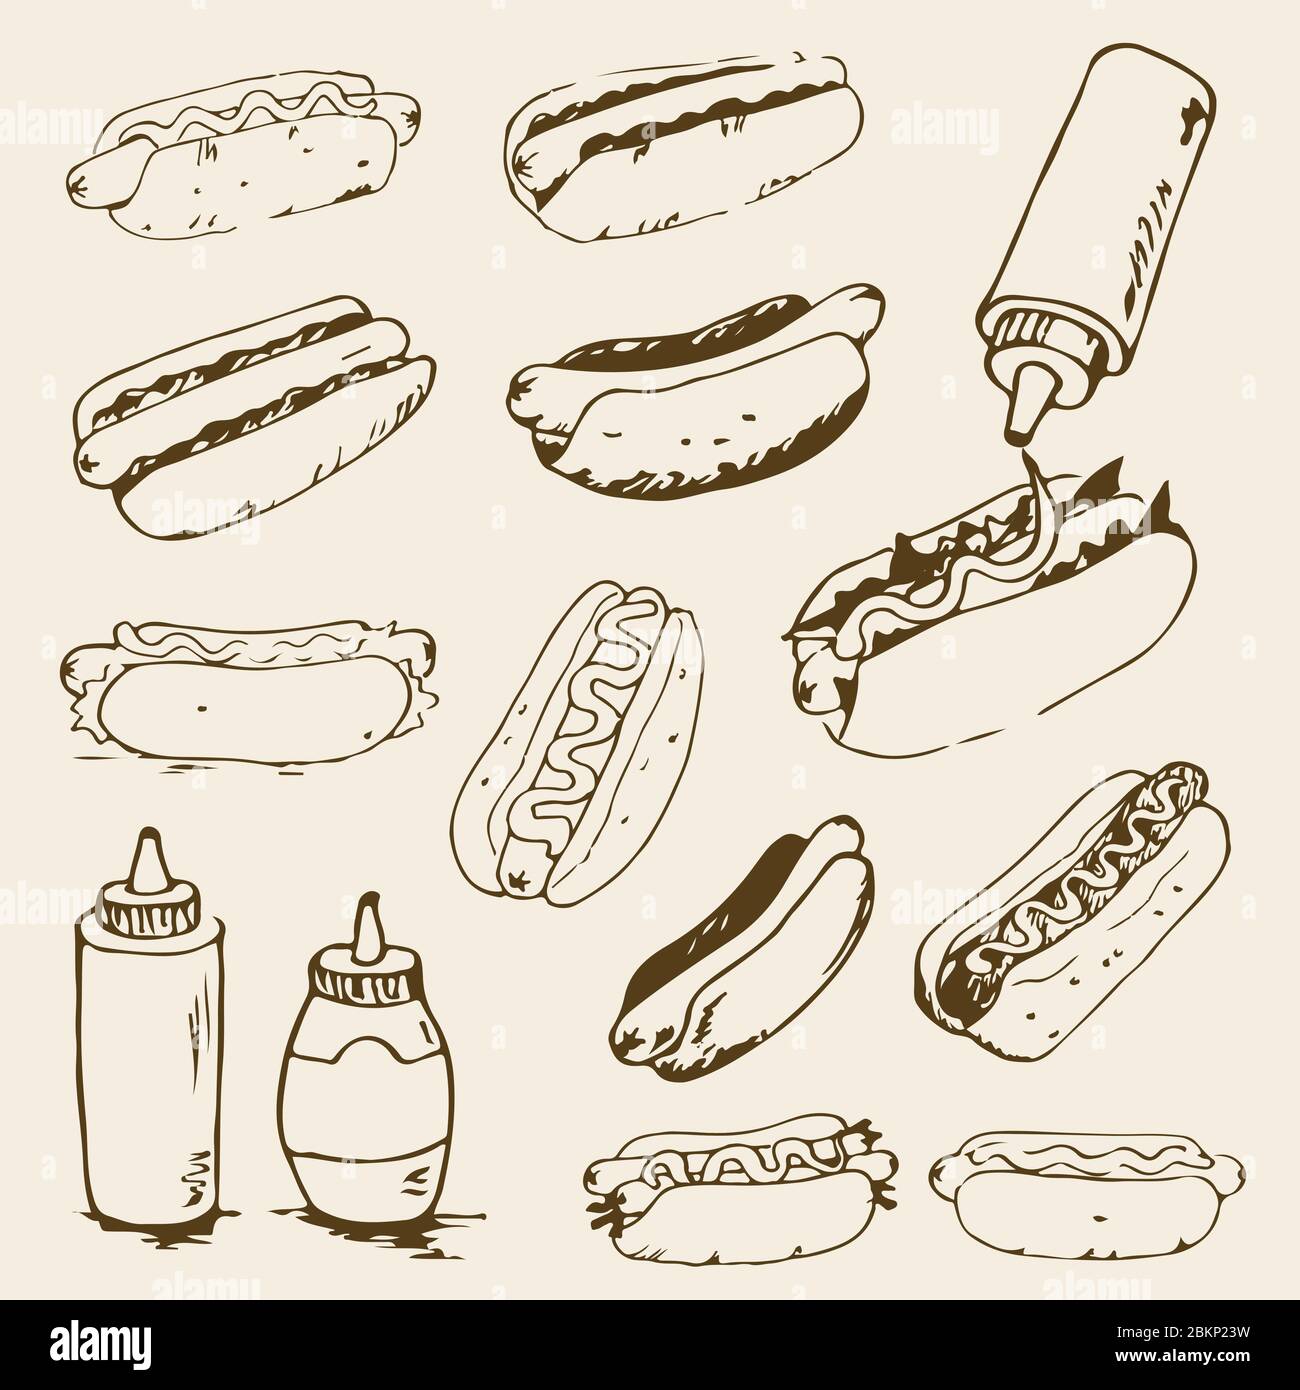 Hot Dog Handgezeichnete Illustrationen. Fast Food Design Elemente, Skizzen von Hotdogs mit Sauce, Mayonnaise und Gemüse. Monochromer EPS8-Vektor Stock Vektor